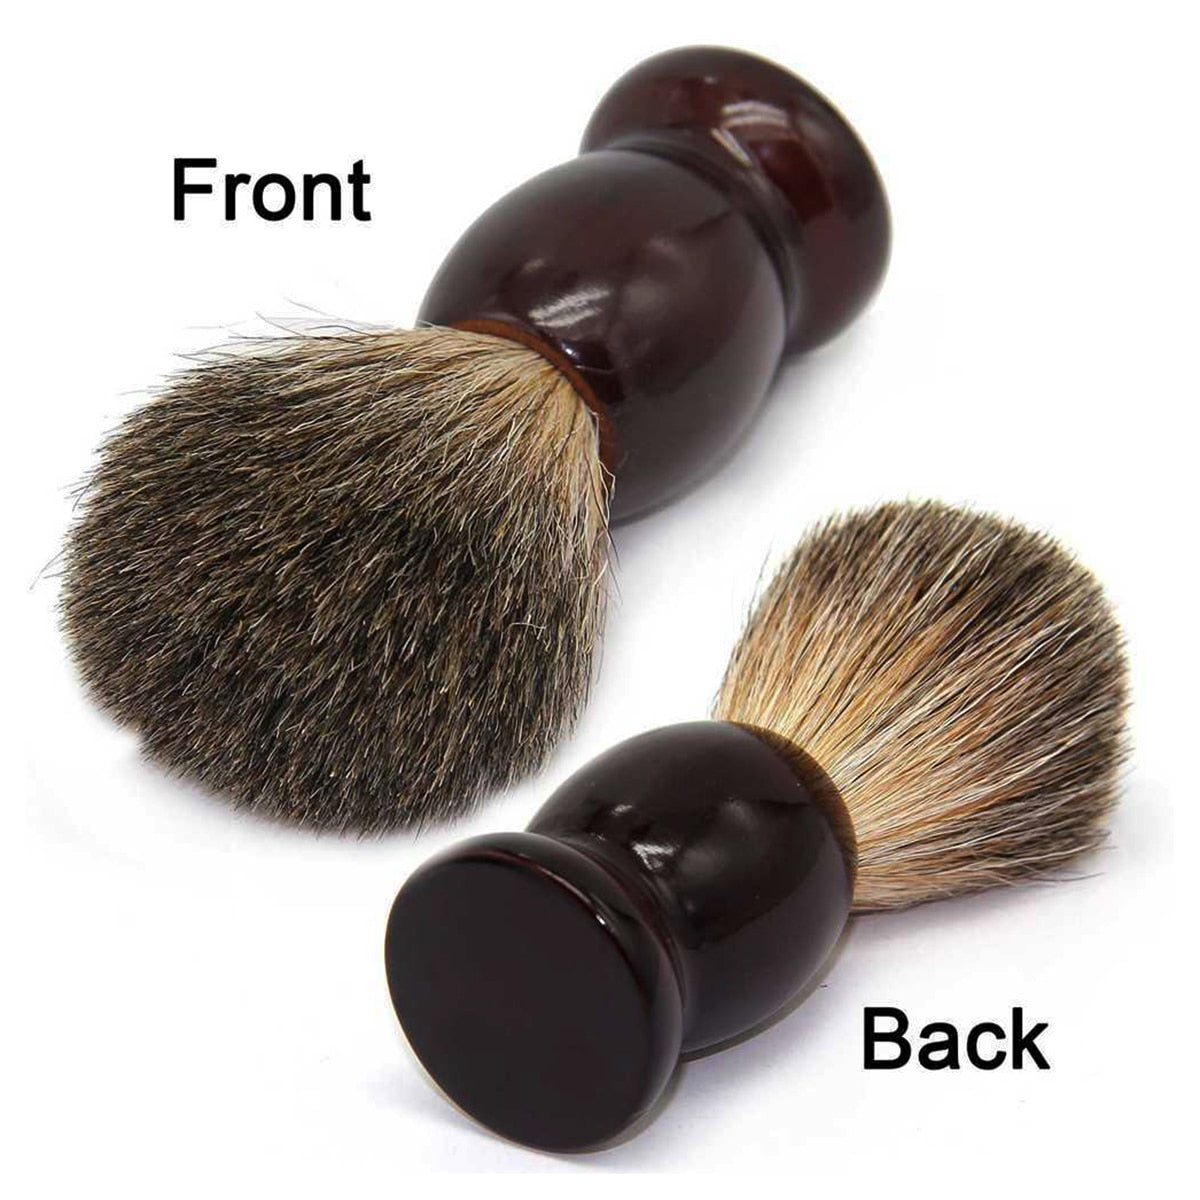 Badger Brush and Wood Bowl Shaving Kit for Men